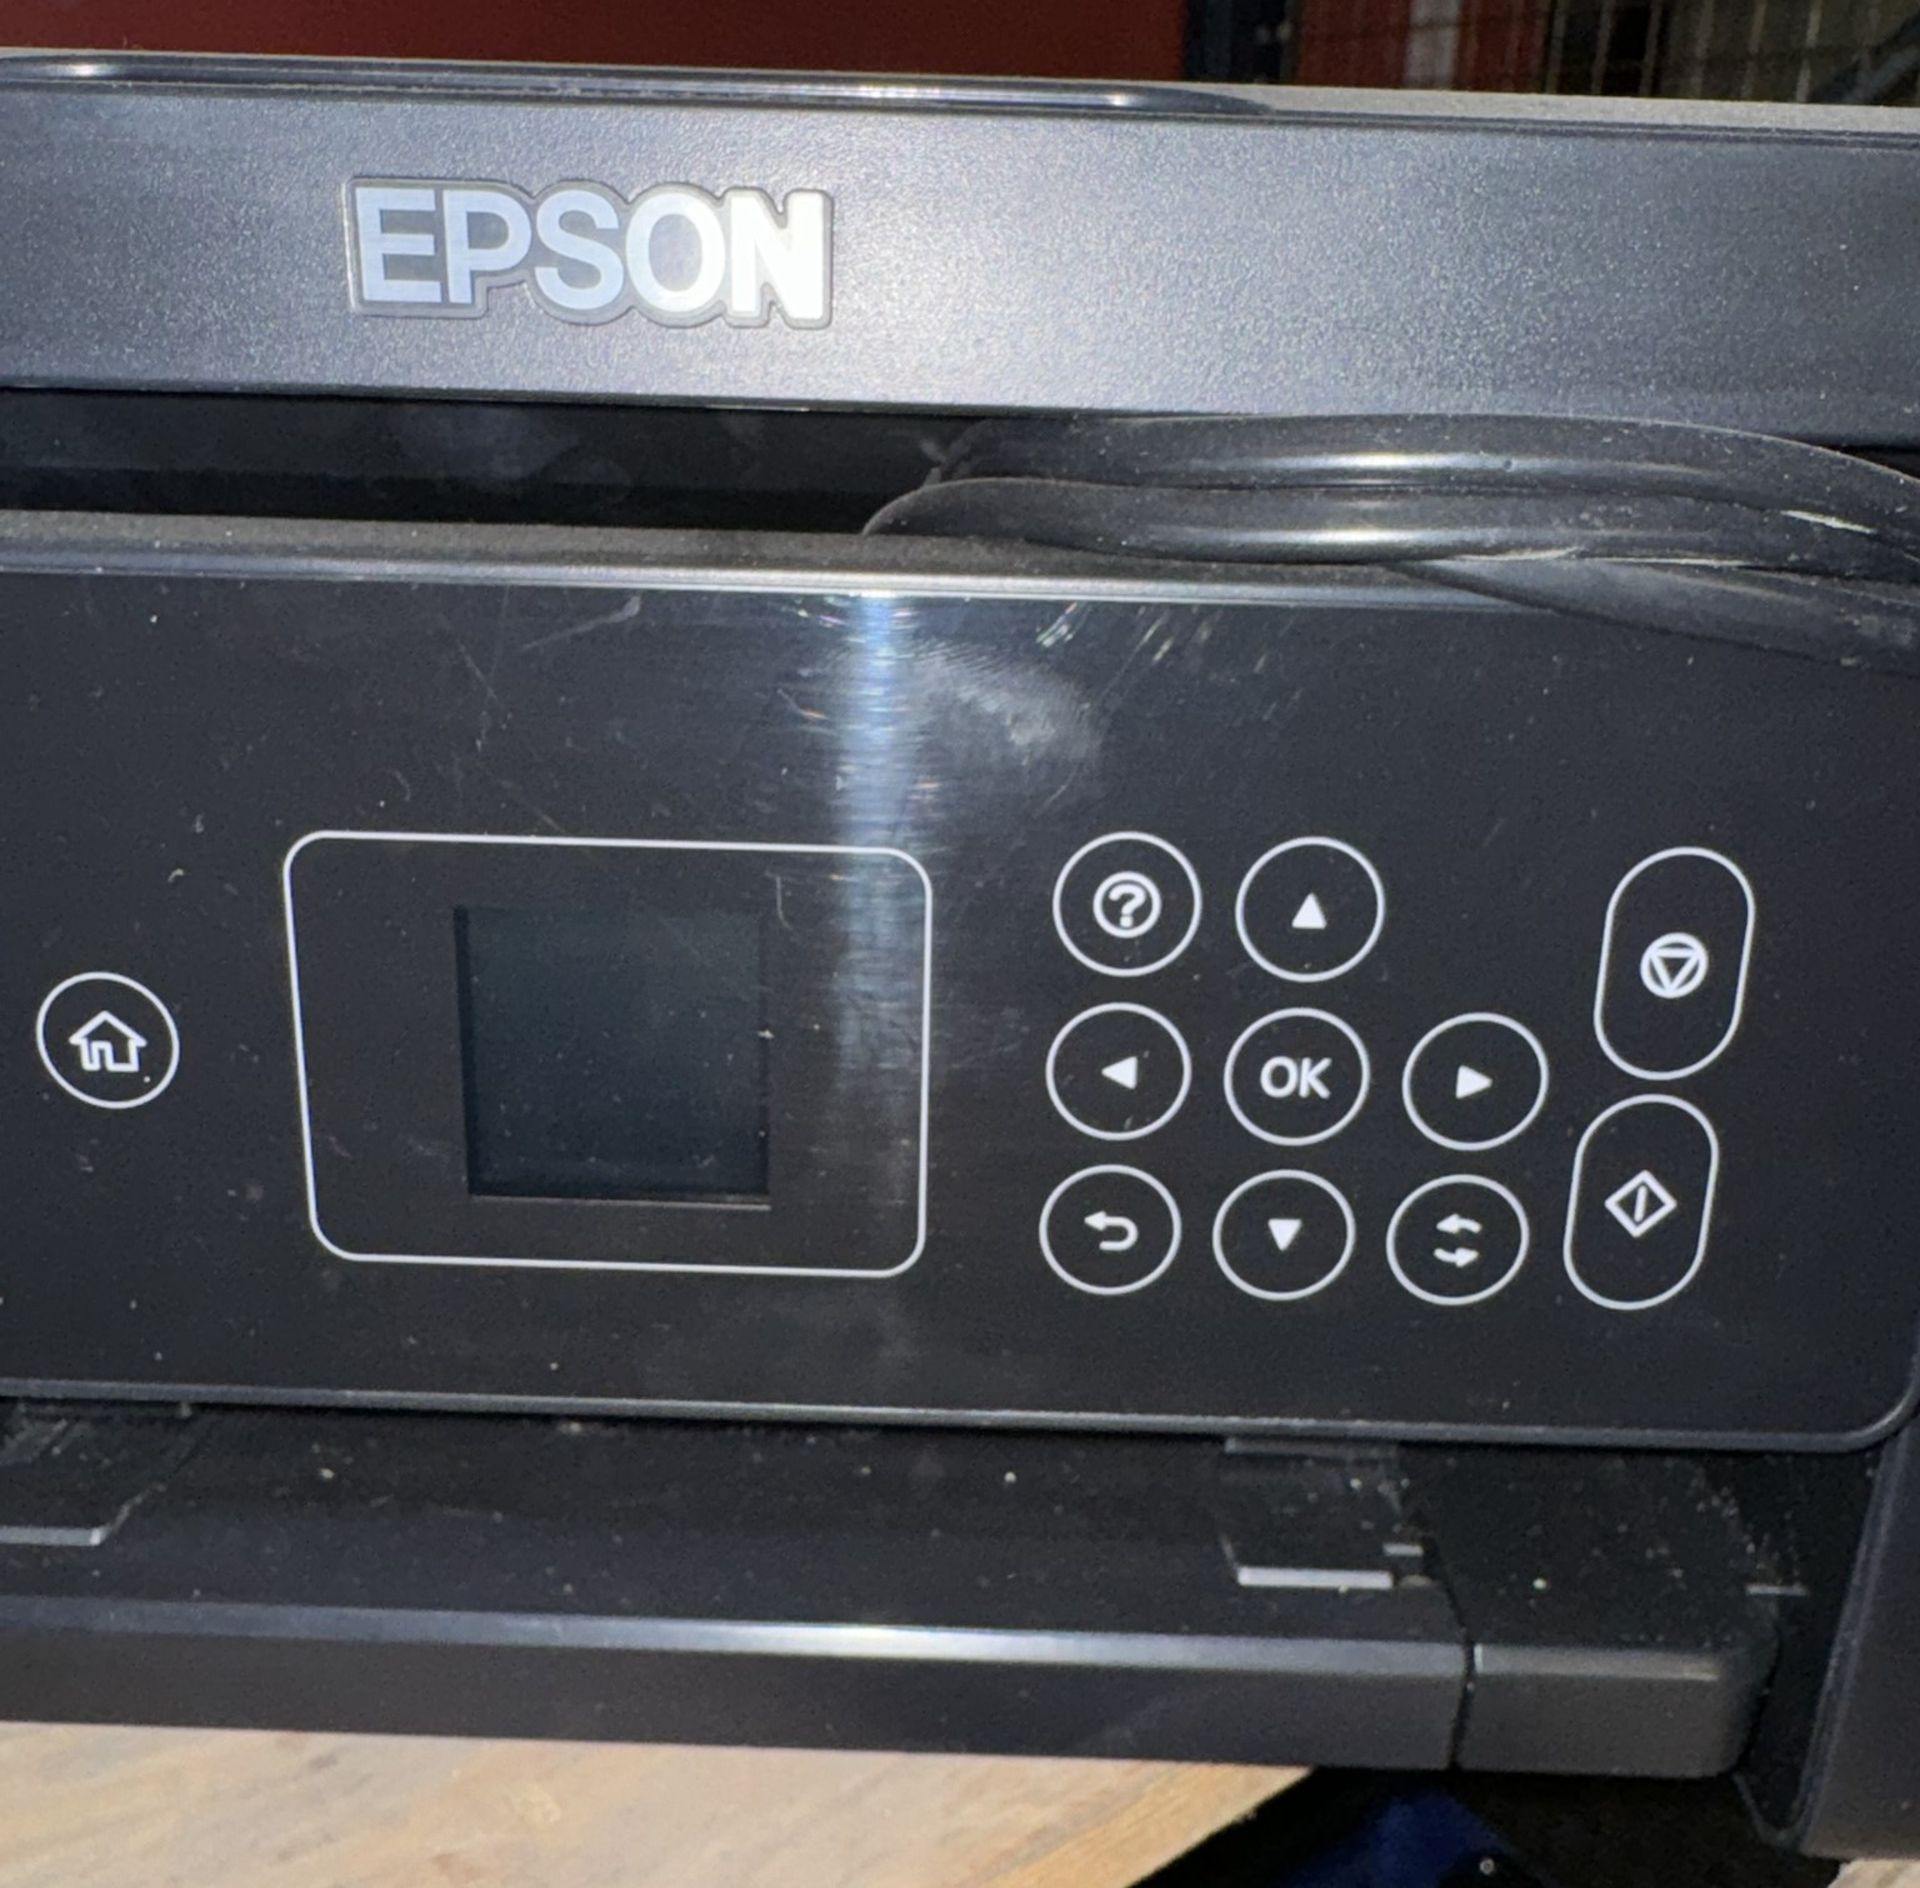 Epson C636A All-in-One Wireless Inkjet Printer - Bild 3 aus 5